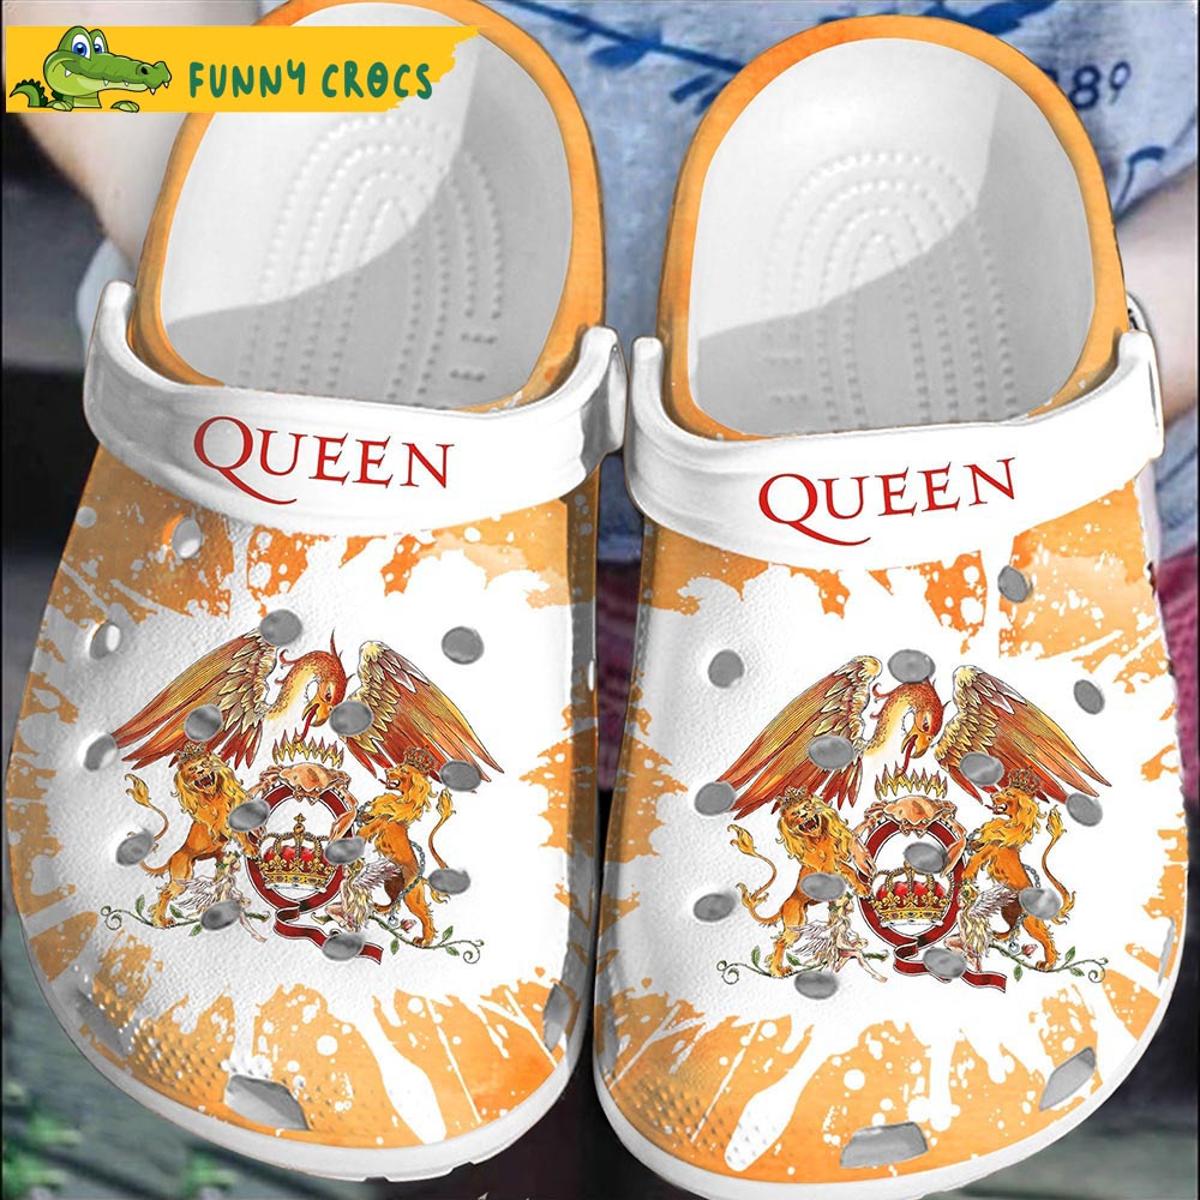 Funny Rock Band Queen Crocs Shoes